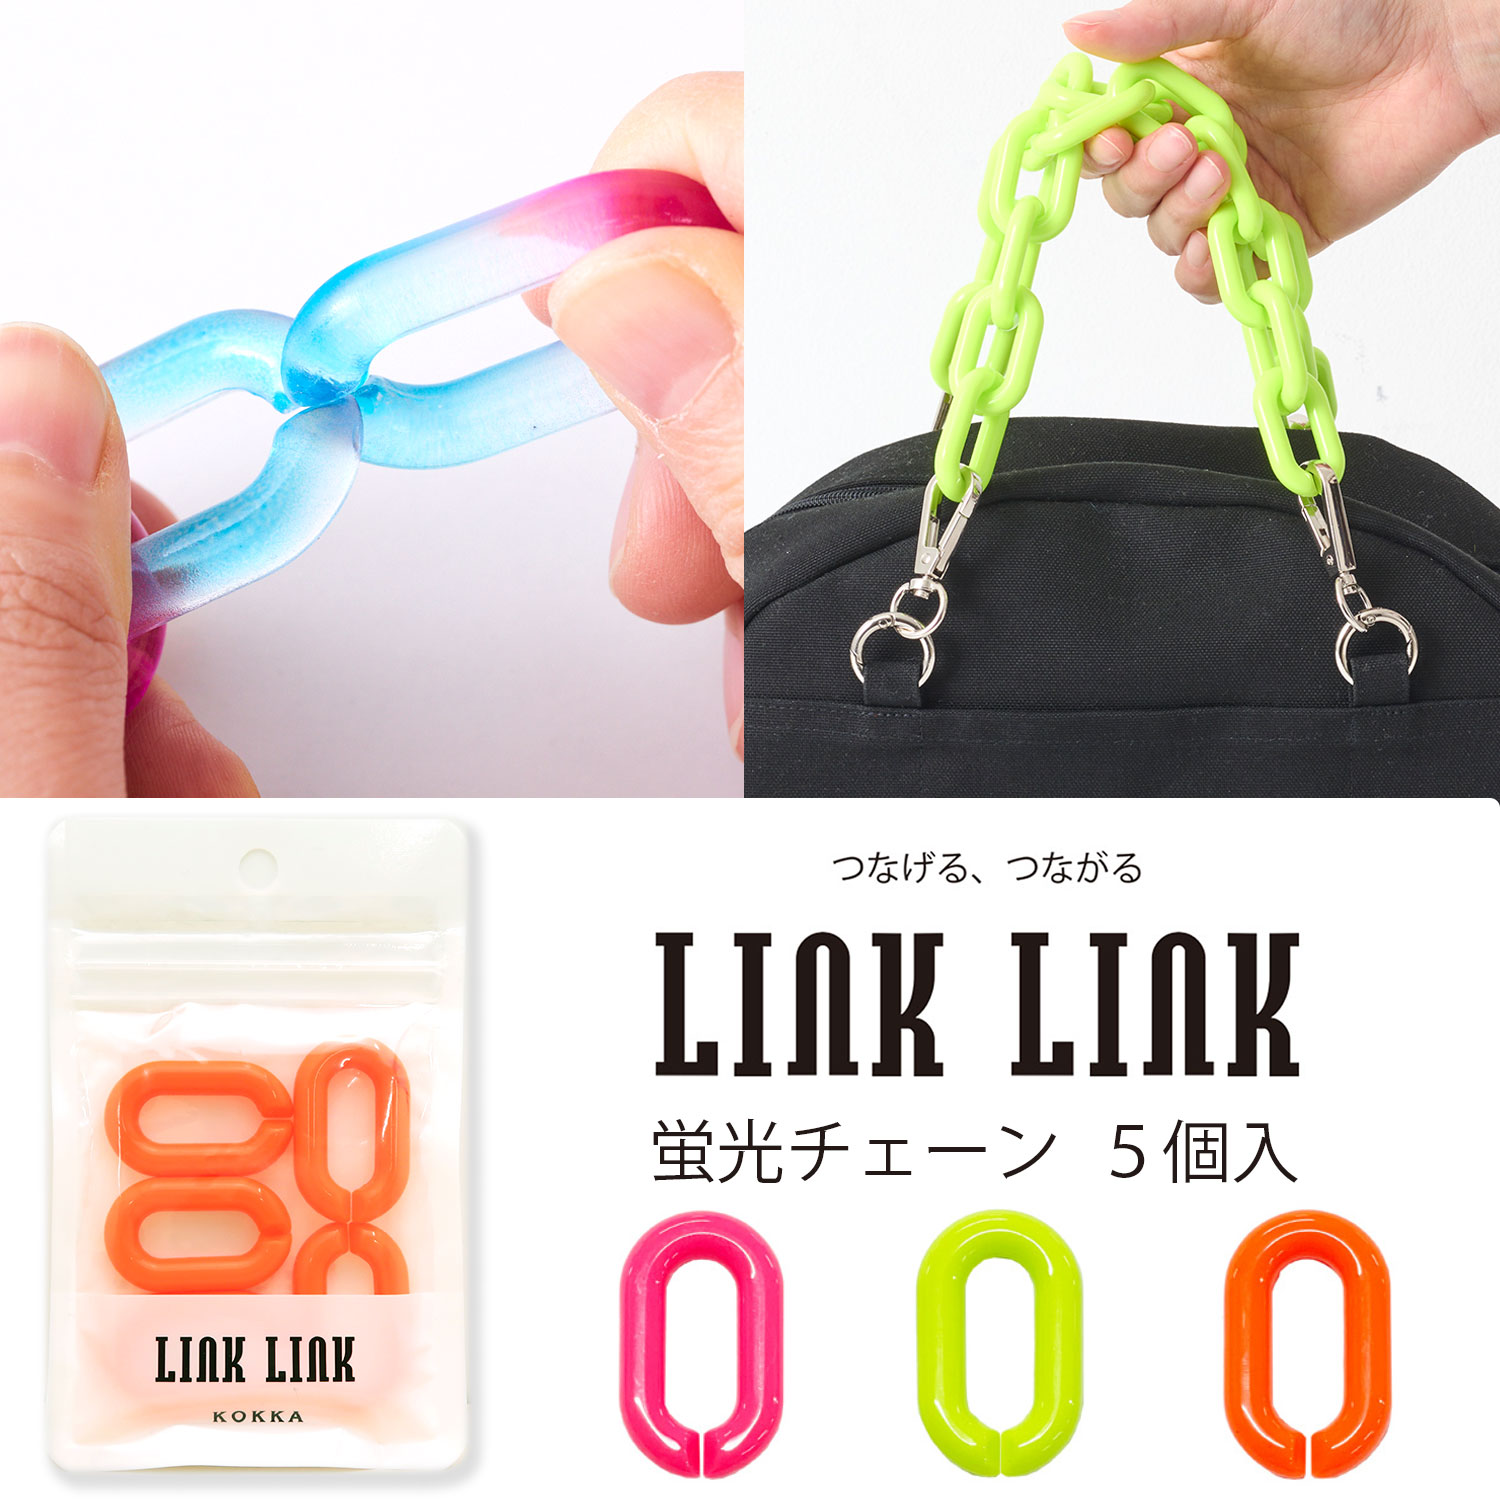 LINK LINK 蛍光チェーン 同色5個セット 全3色 アクリルパーツ プラパーツ 鎖 スマホケース ストラップ ホルダー ハンドル 持ち手 アクセサリー ネオンカラー 約24mmx39mm